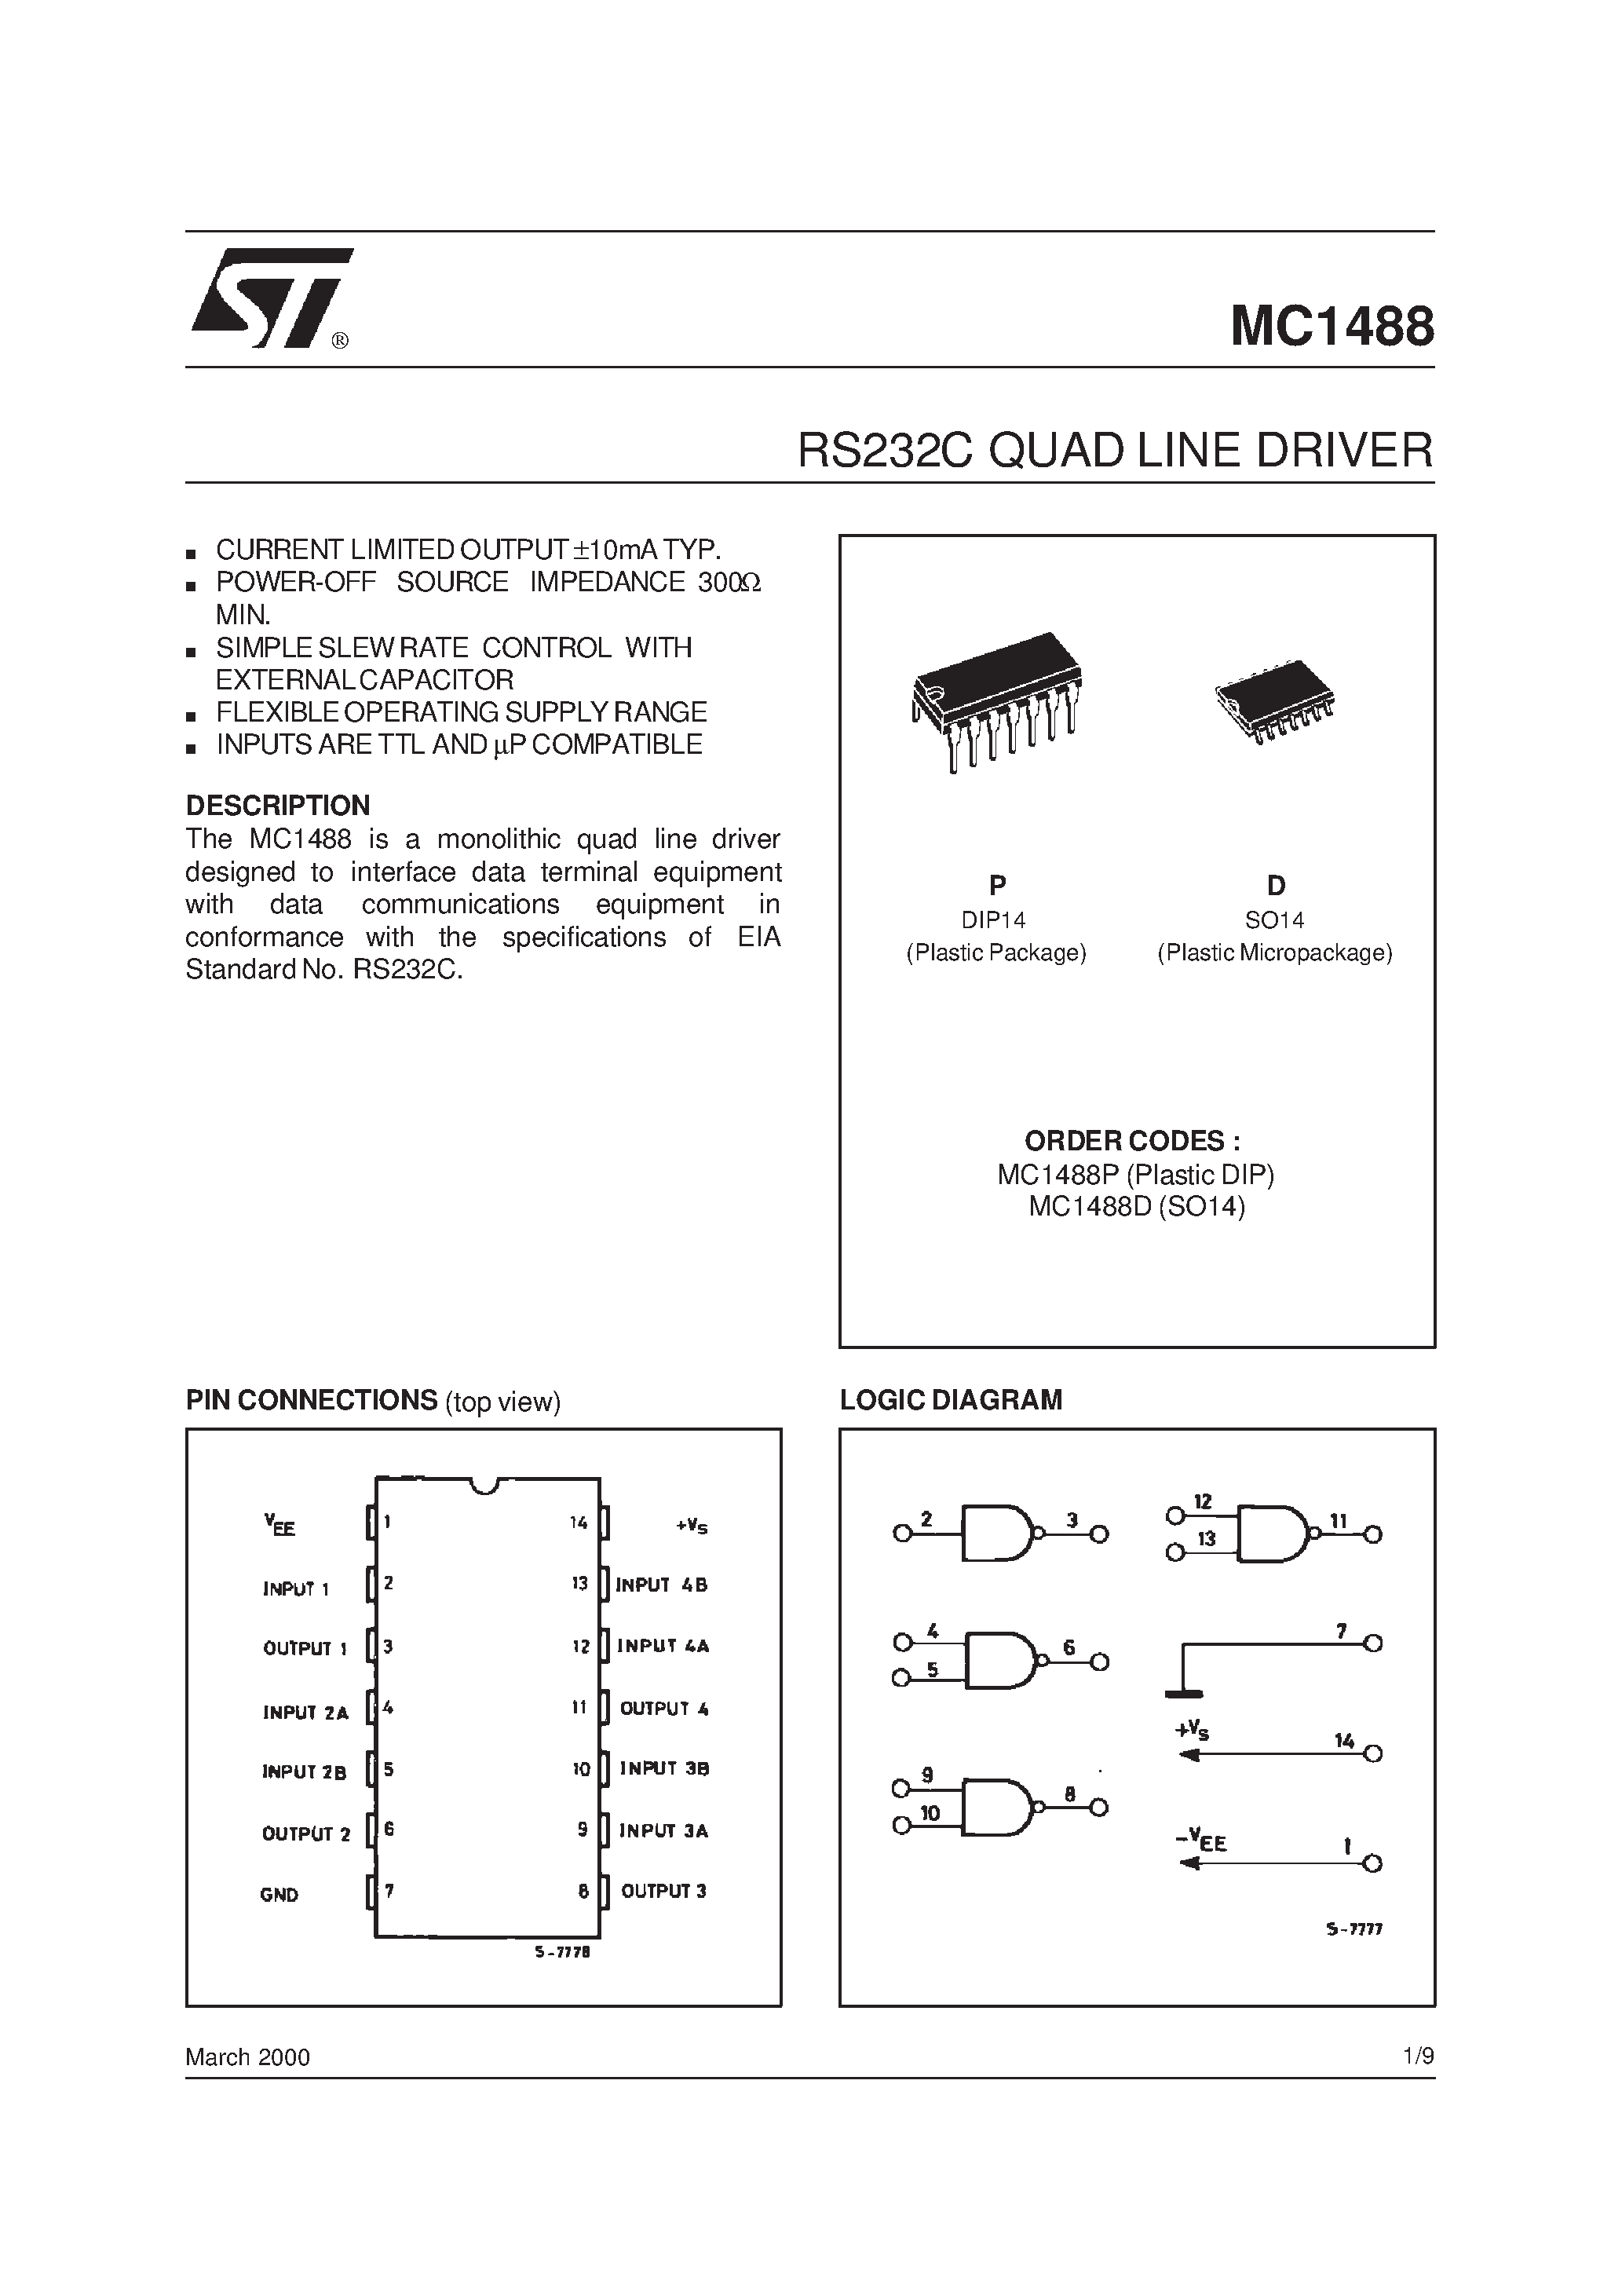 Даташит MC1488 - RS232C QUAD LINE DRIVER страница 1